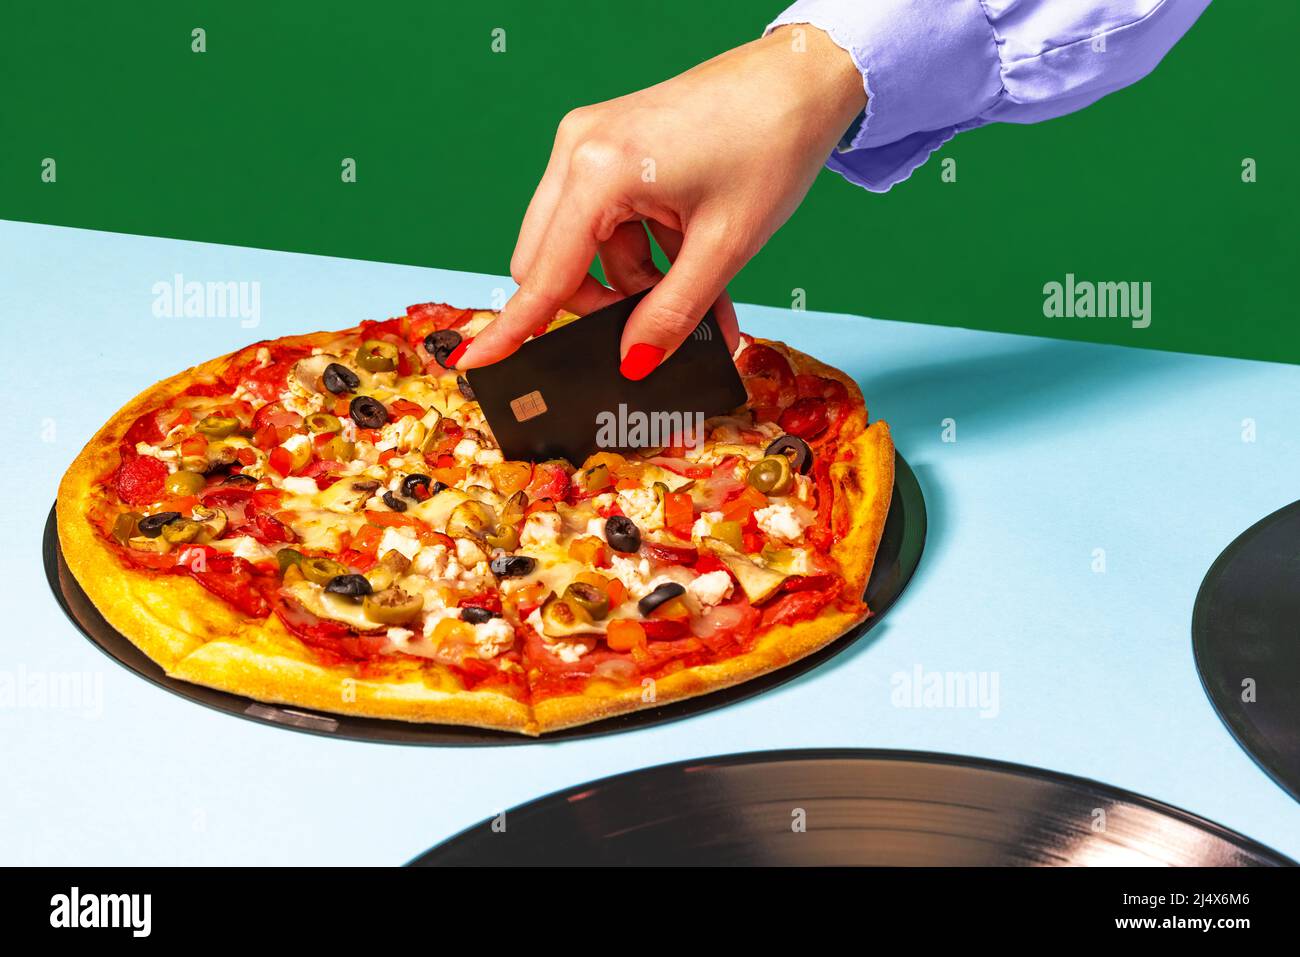 Kreative Pizza schneiden. Weibliche Hände mit italienischer Pizza liegen auf Vinylscheiben auf heller Tischdecke isoliert auf grünem Hintergrund. Vintage-Retro-Style Stockfoto